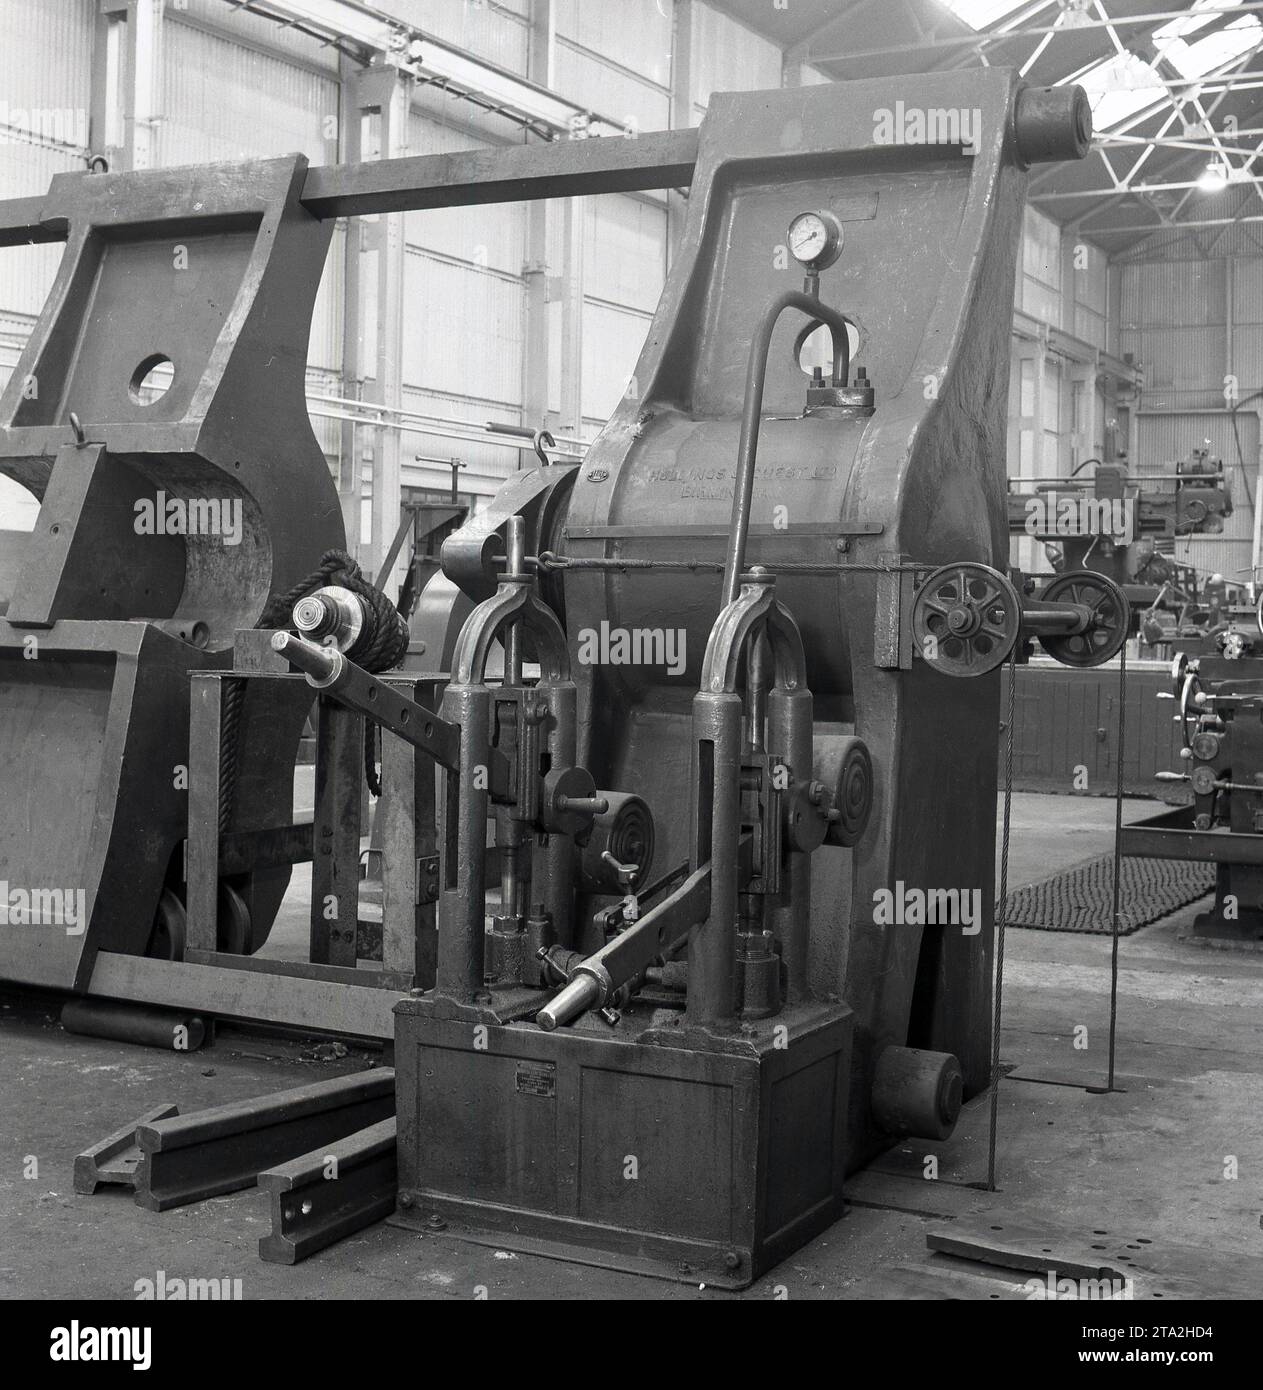 Années 1950, historique, à l'intérieur d'une aciérie, Abbey Works à Port Talbot, pays de Galles, Royaume-Uni, nous voyons une grande machine d'ingénierie en fonte, une presse hydraulique fabriquée par Hollings & Guest Ltd, de Thimble Mill Lane, Birmingham. Pâté sur la machine, n° 1101. Banque D'Images